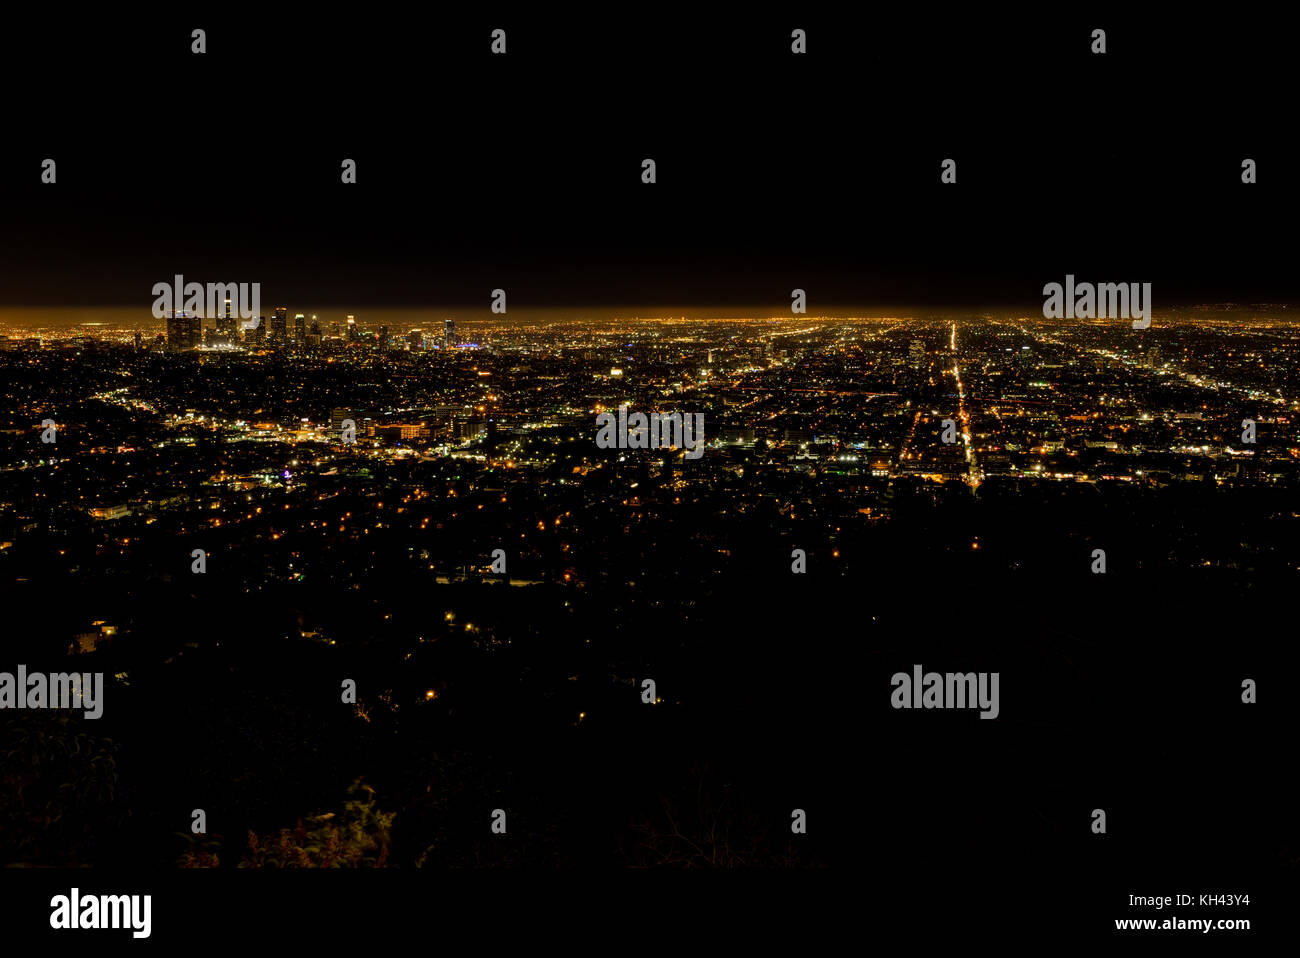 LA Ciudad de Los Ángeles vista nocturna desde el Observatorio Griffith Foto de stock